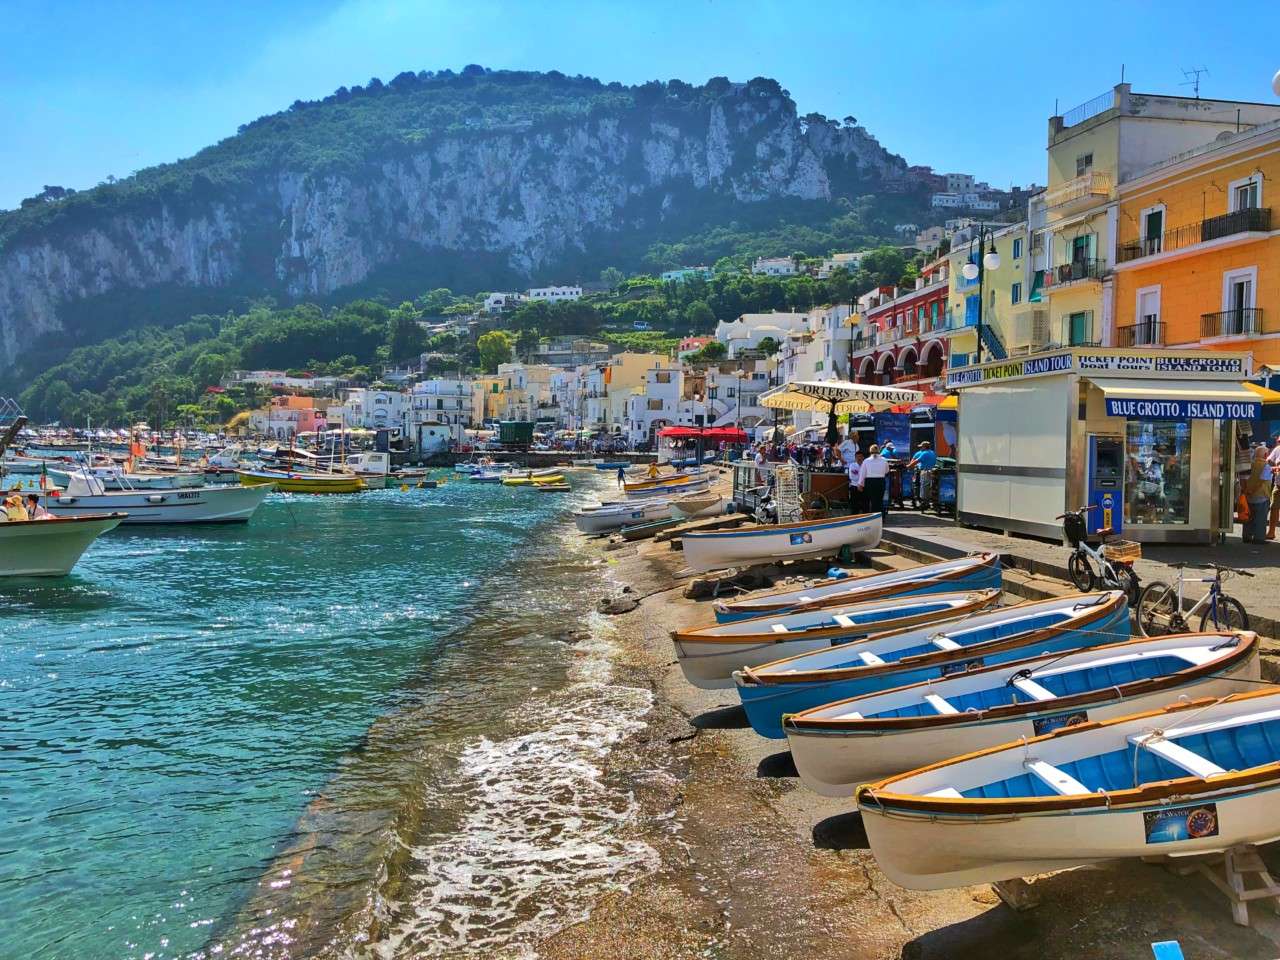 Bărci în Capri pe Coasta Amalfi jigsaw puzzle online